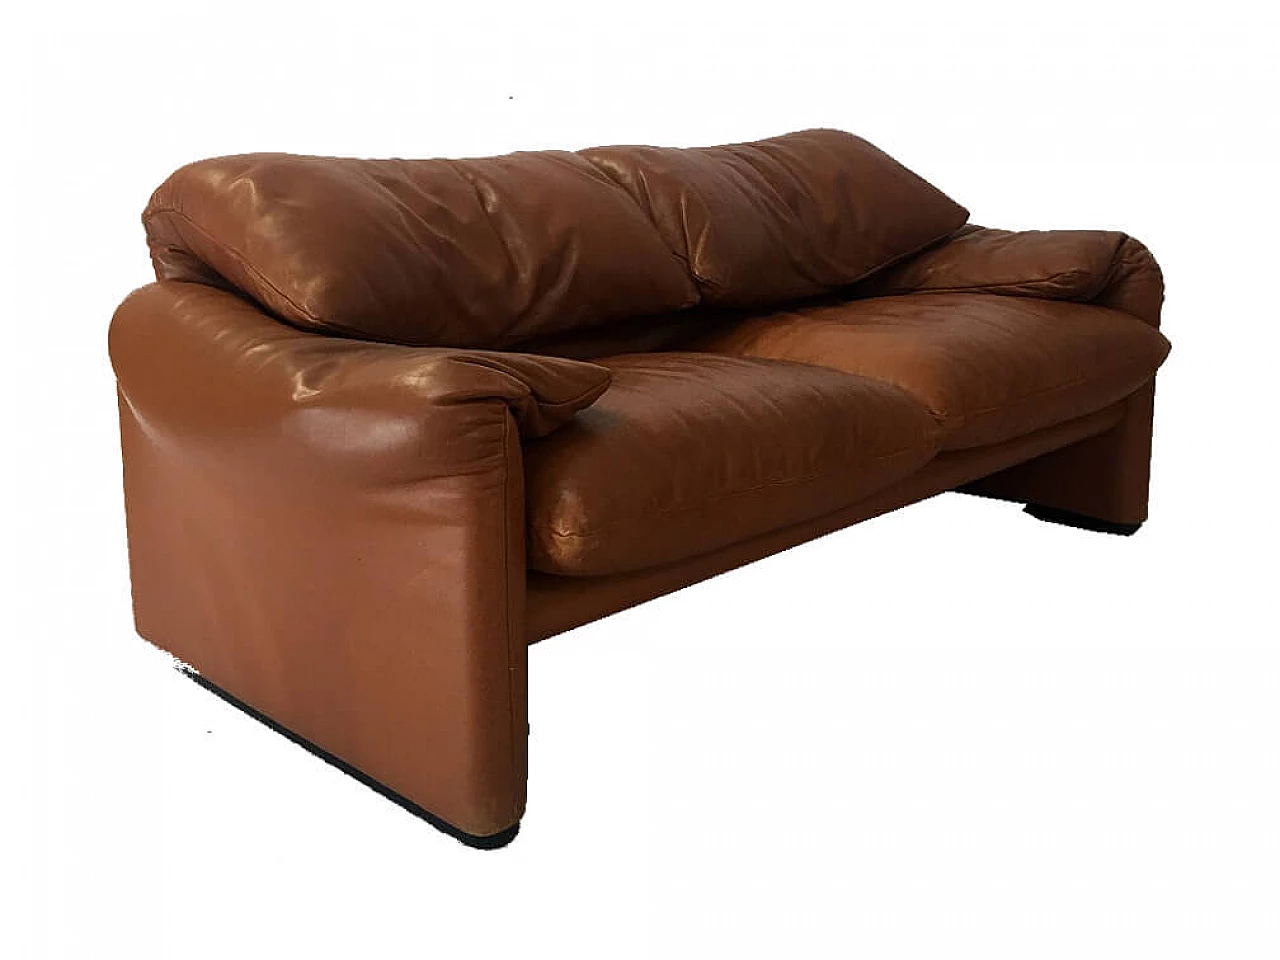 Maralunga leather sofa by Vico Magistretti for Cassina, 1970s 1130799